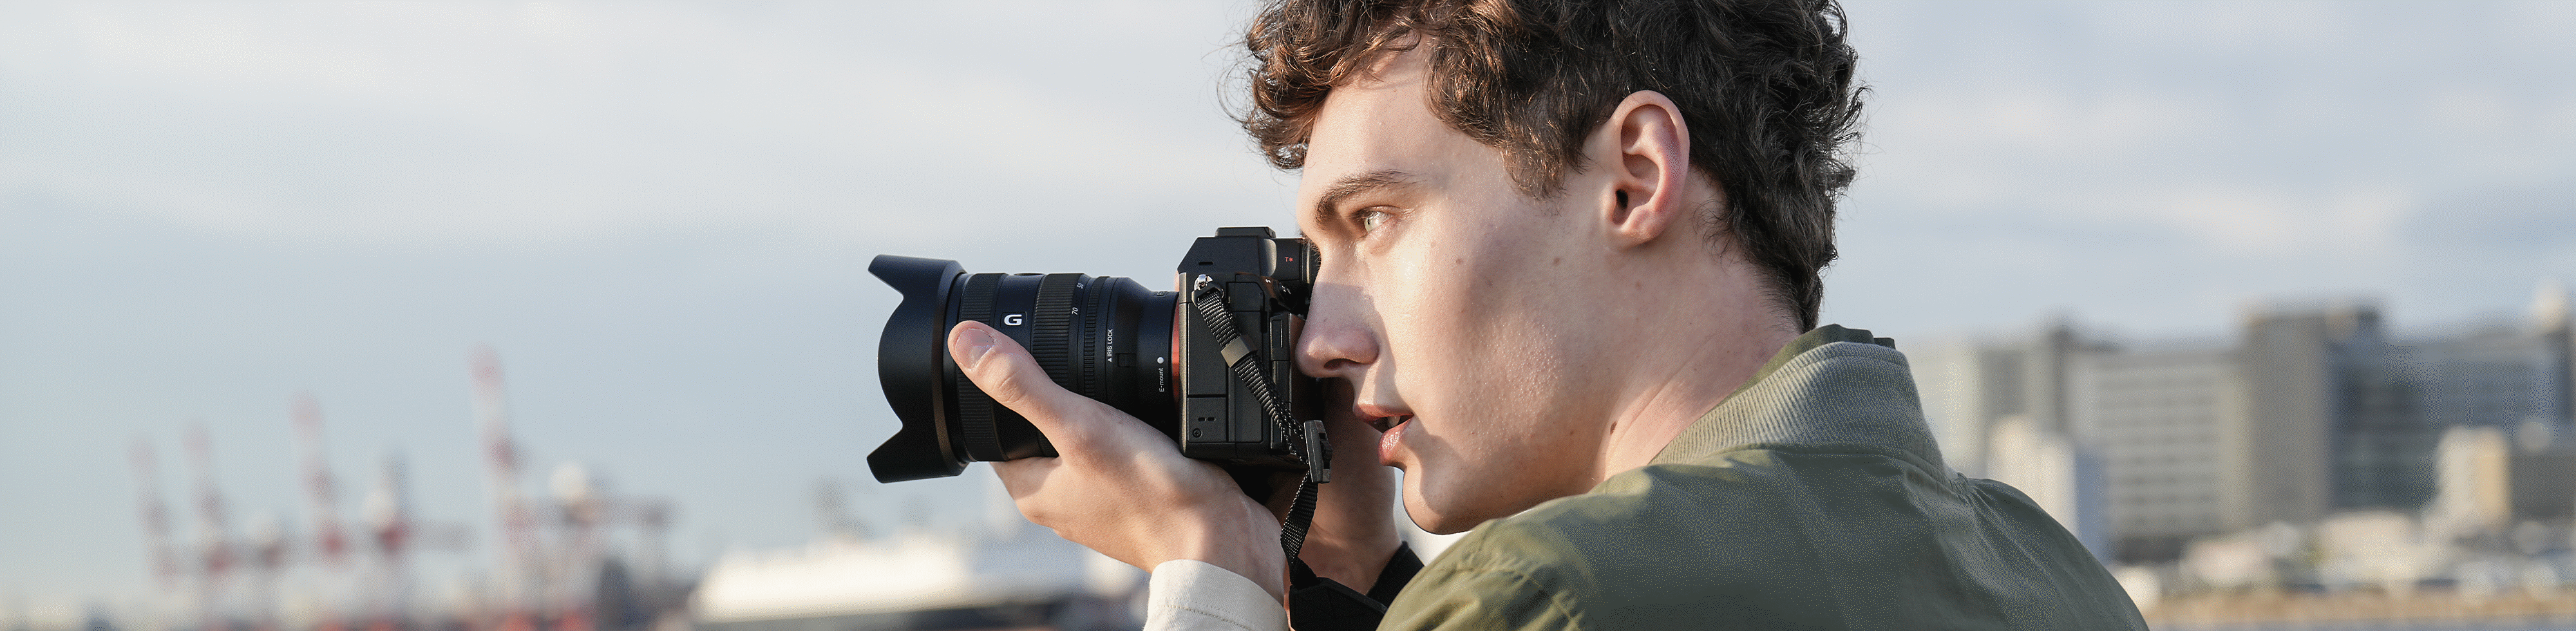 Hombre fotografiando en una costa con la cámara en la mano usando el visor